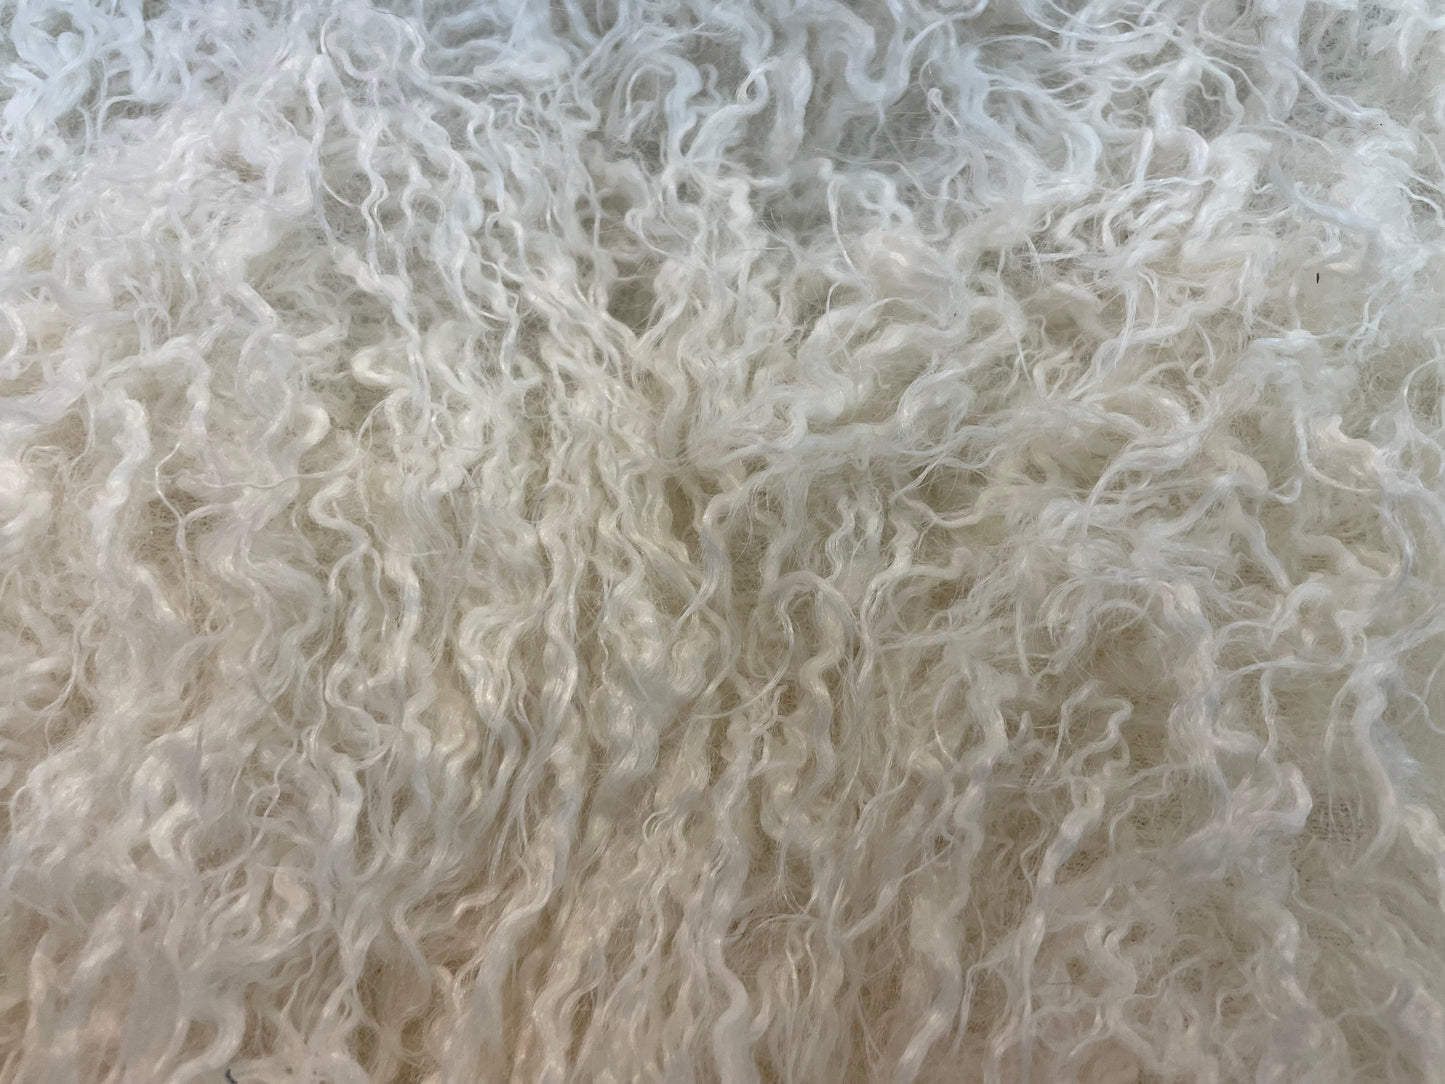 Faux Mongolian Sheep Fur - Warm White